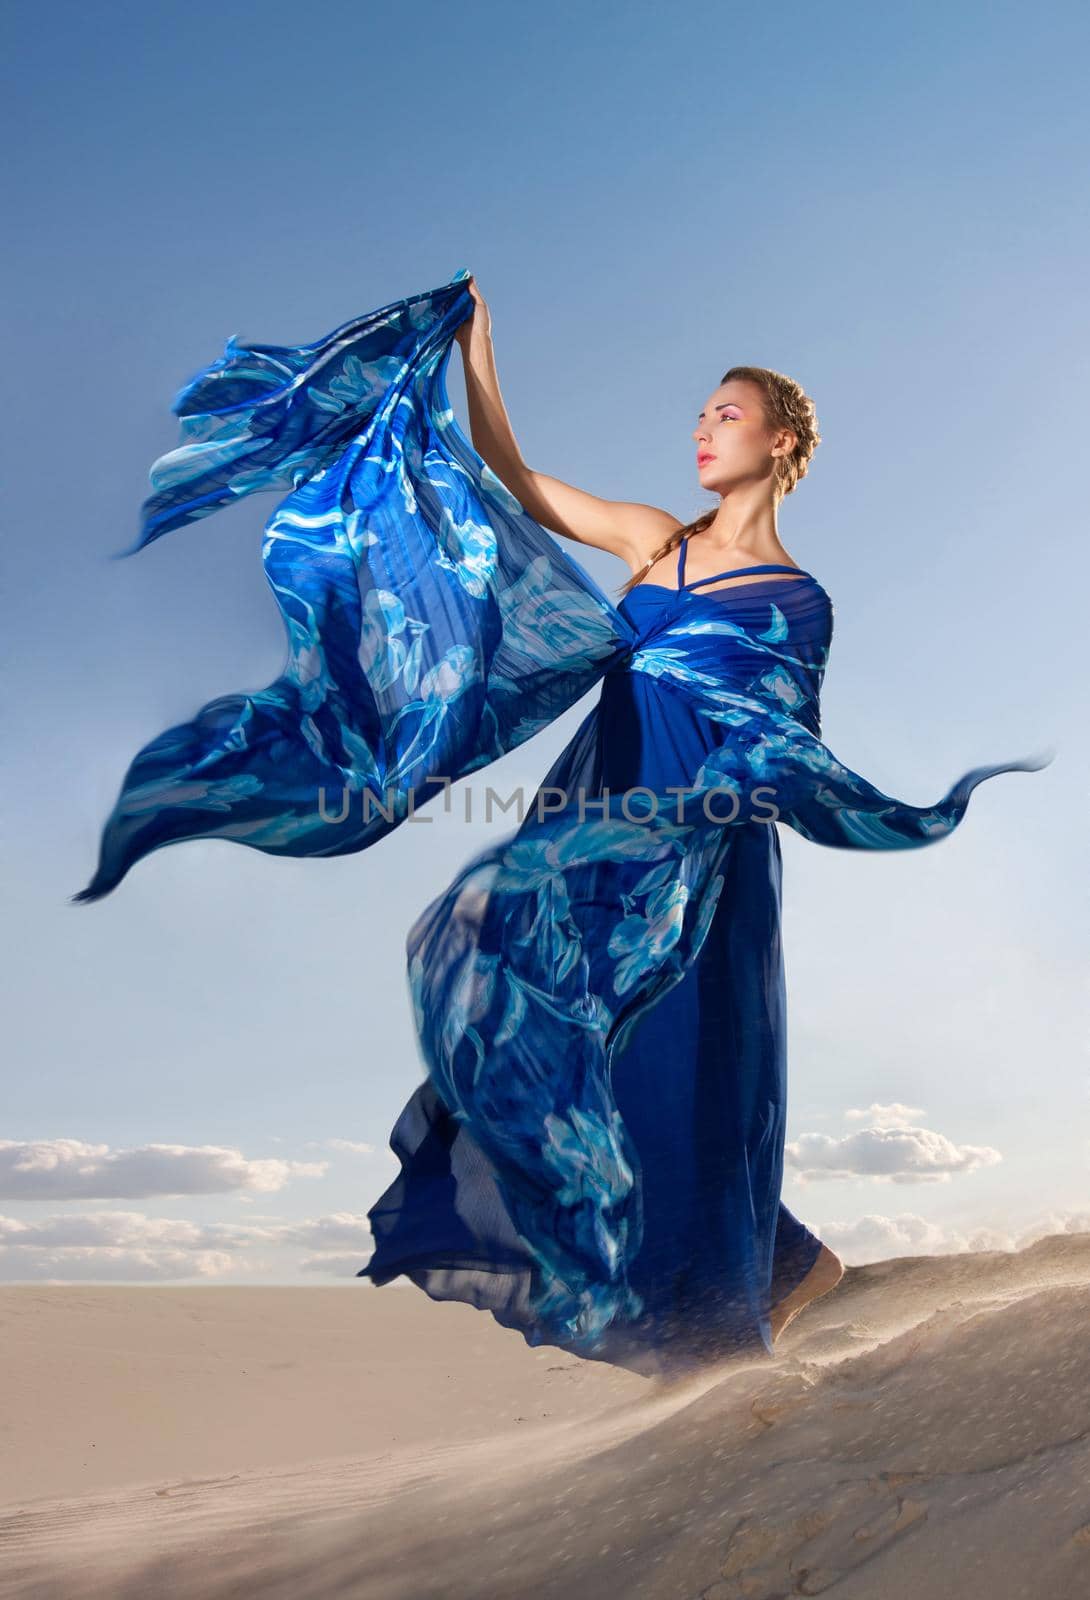 Portrait of a beauty woman in blue dress on the desert